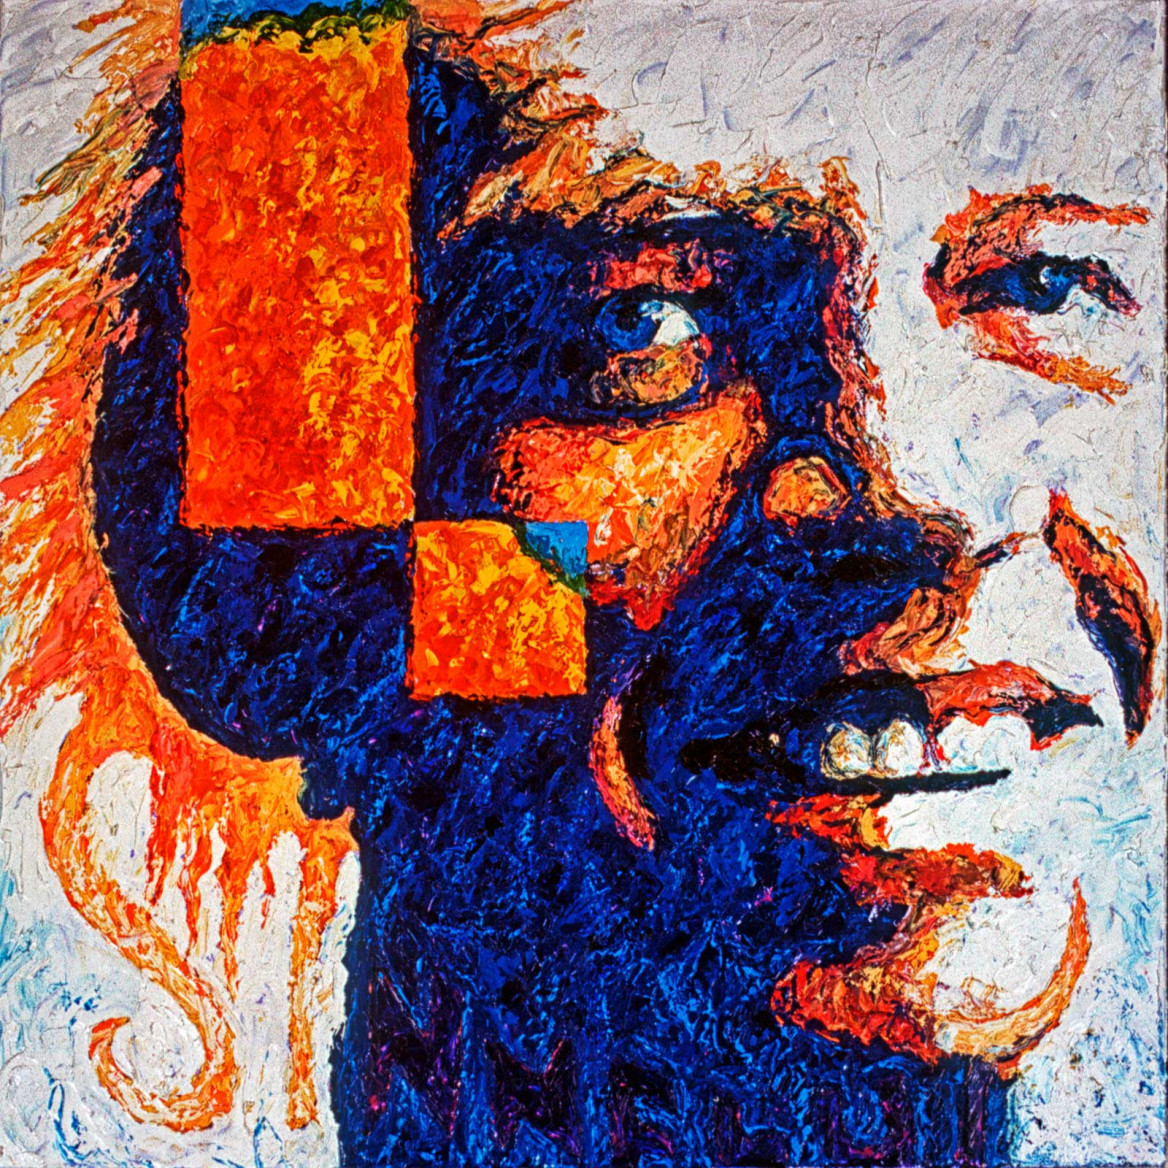 Portrait of Boernie in orange and blue painted with palette knife in oil on canvas; Porträt von Boernie in Blau- und Orangetönen gemalt in Öl mit Spachtelmesser auf Leinwand